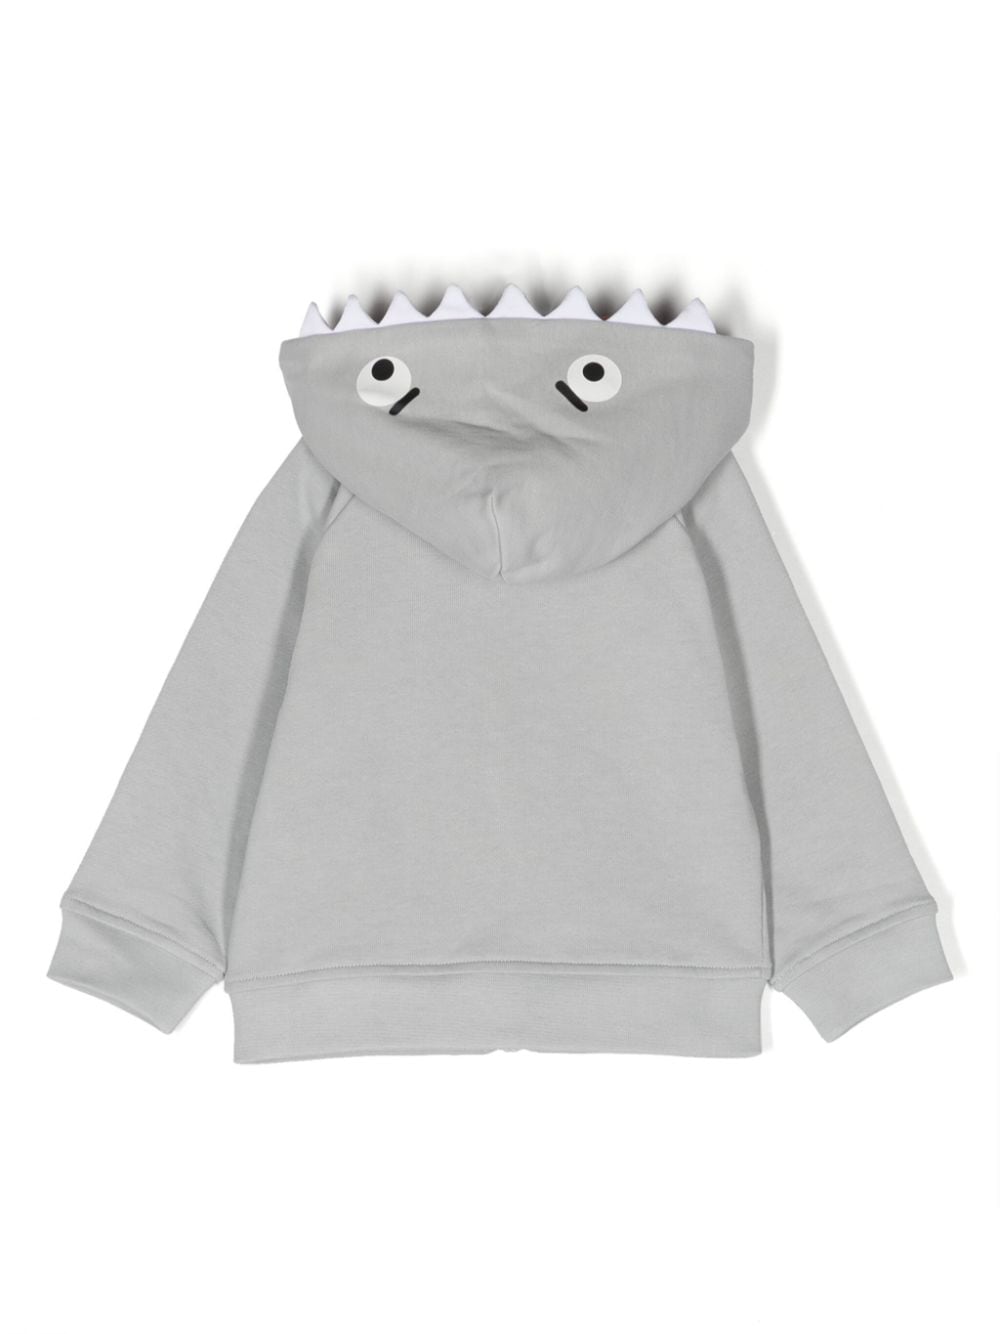 Gray sweatshirt for newborns